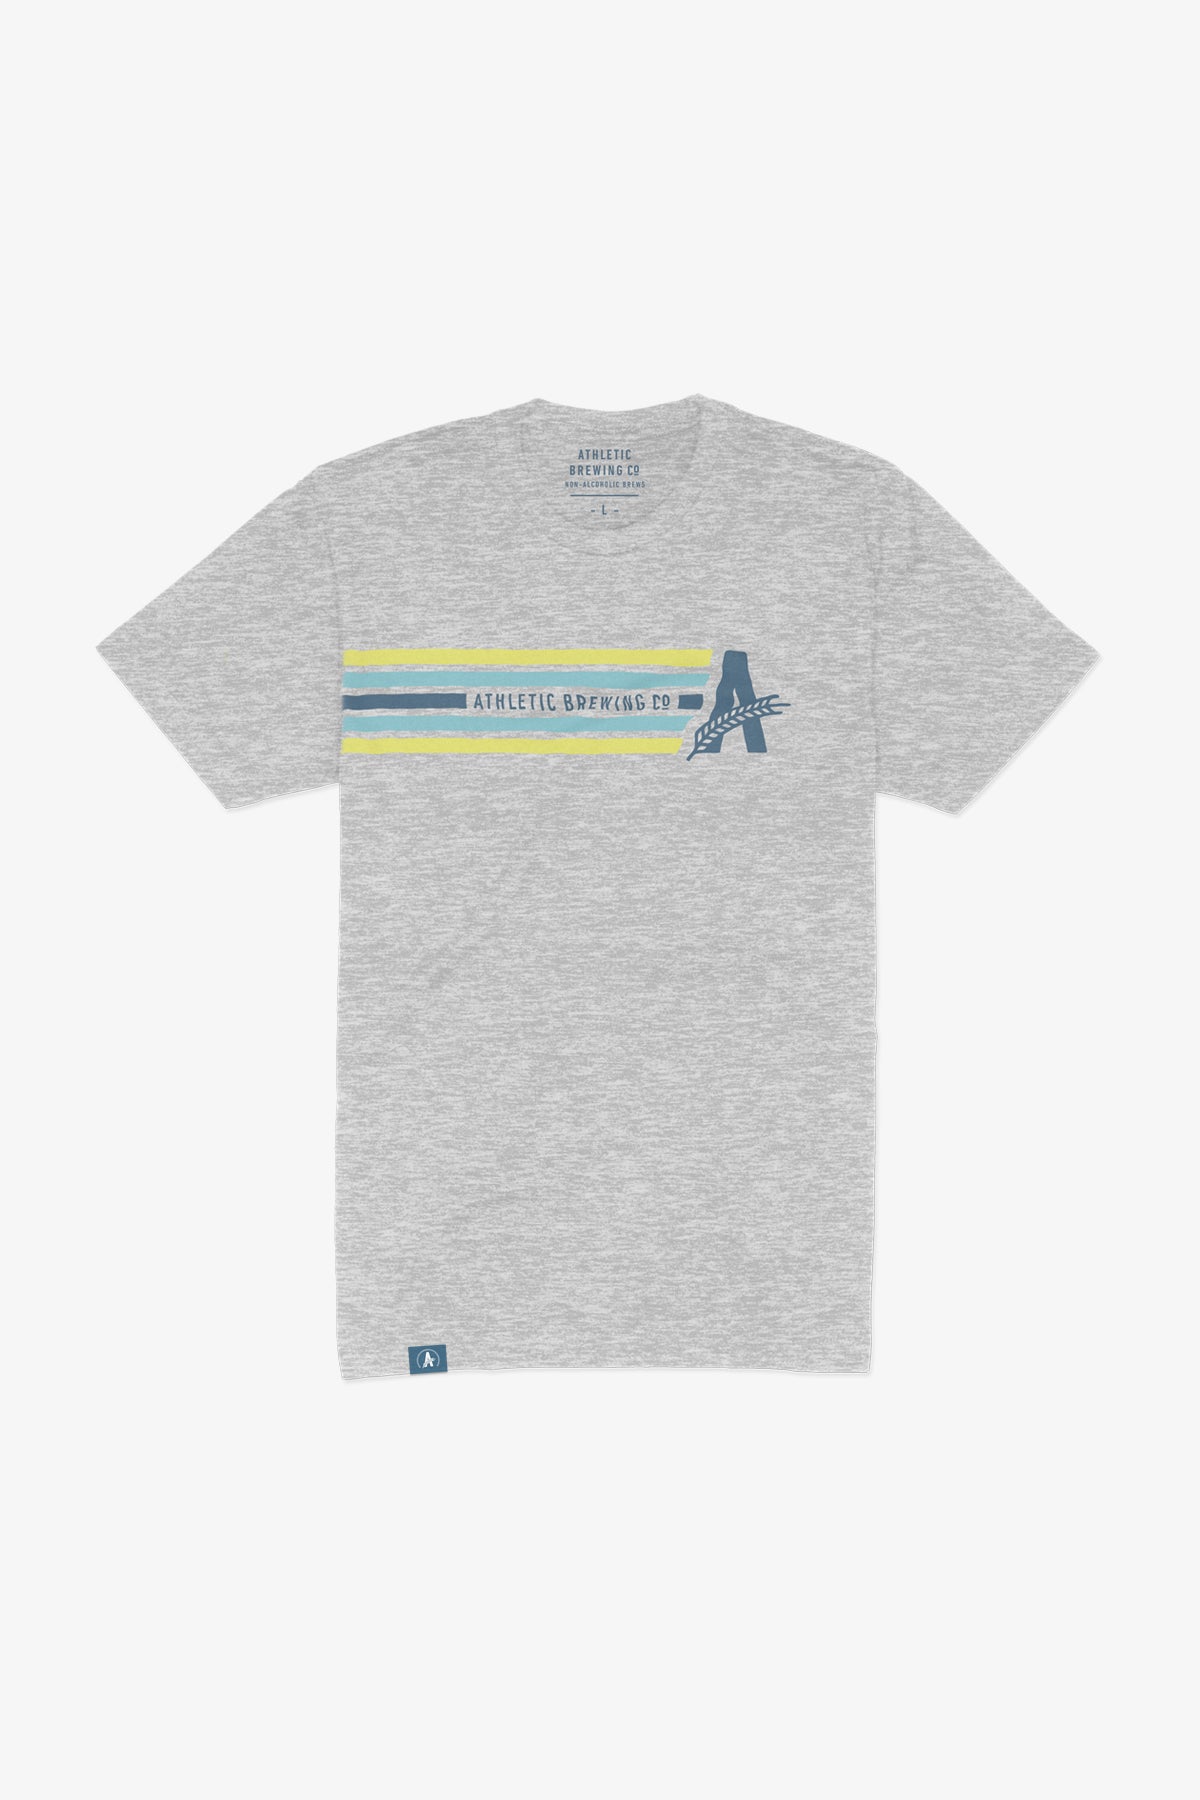 𝅺ZELOS Heathered Blue Lightweight Breezy Navy Stripe Active Running  T-Shirt Top